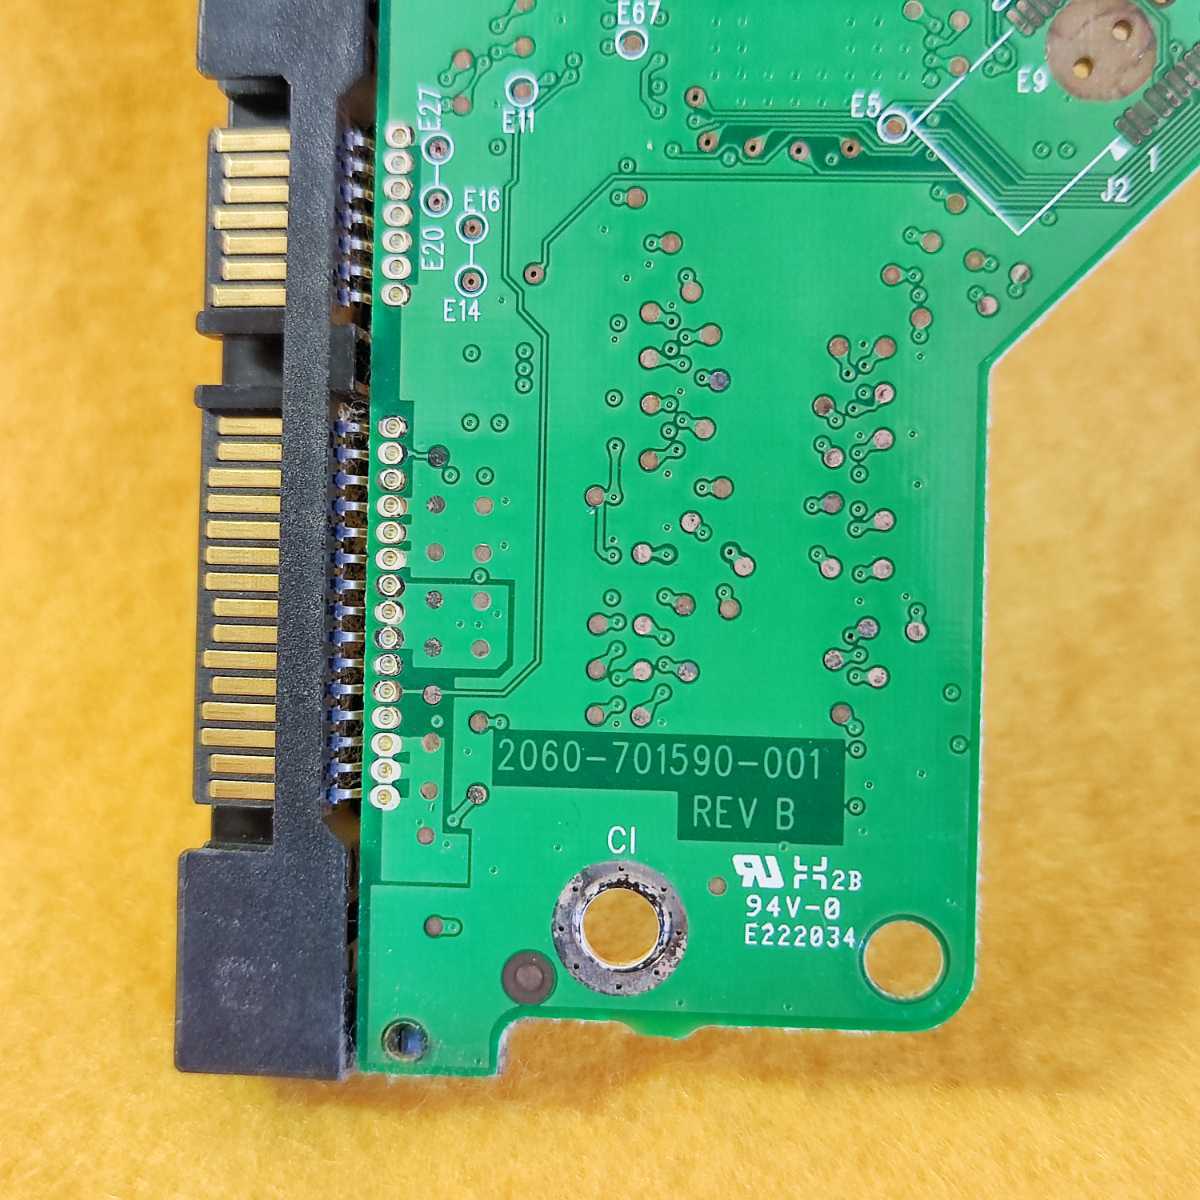 速達 送料無 ★ Western Digital WD HDD ハードディスク ロジックボード 回路基板 PCB 番号 2060-771590-001 REV B ★確認済 X076j_画像4